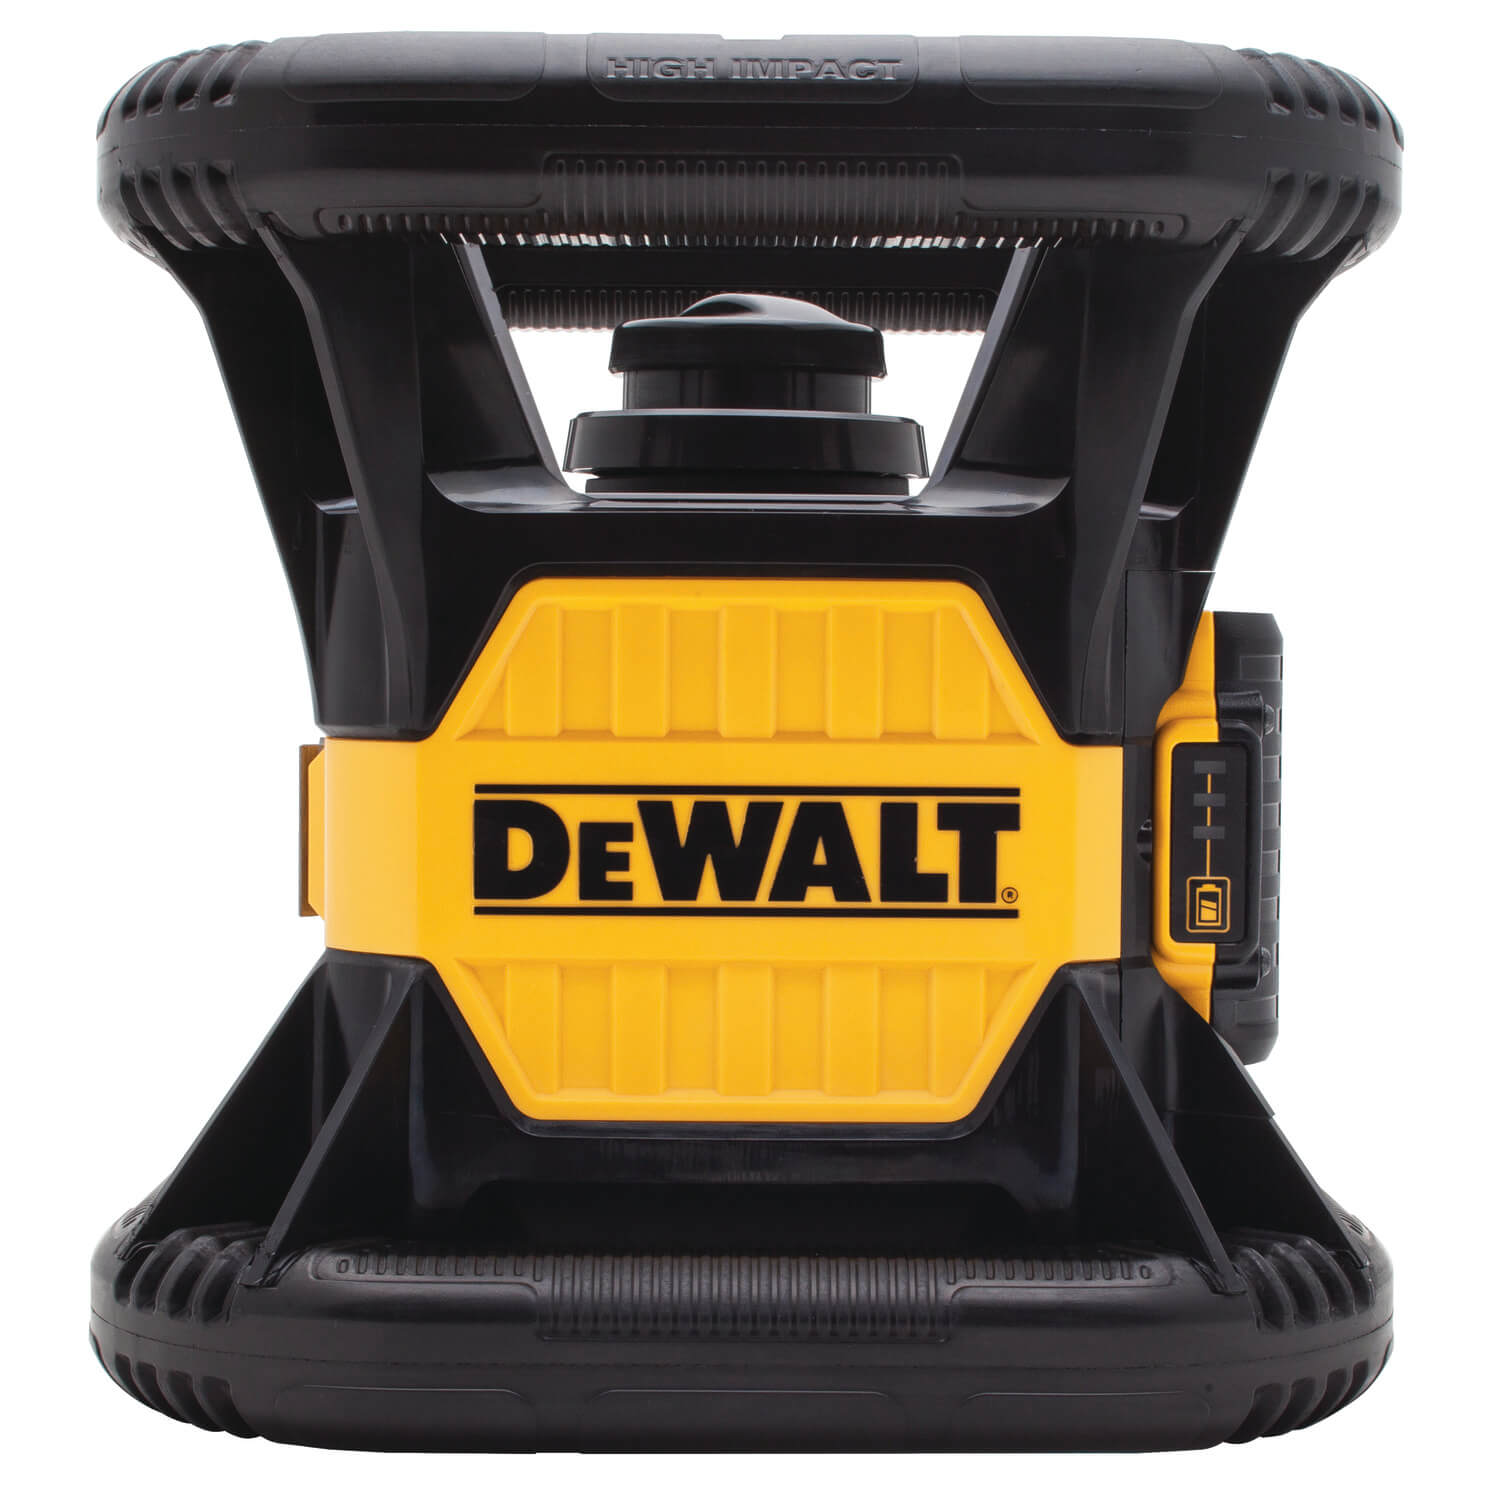 DEWALT DW074LR 20v MAX Rotary Laser, Red - wise-line-tools